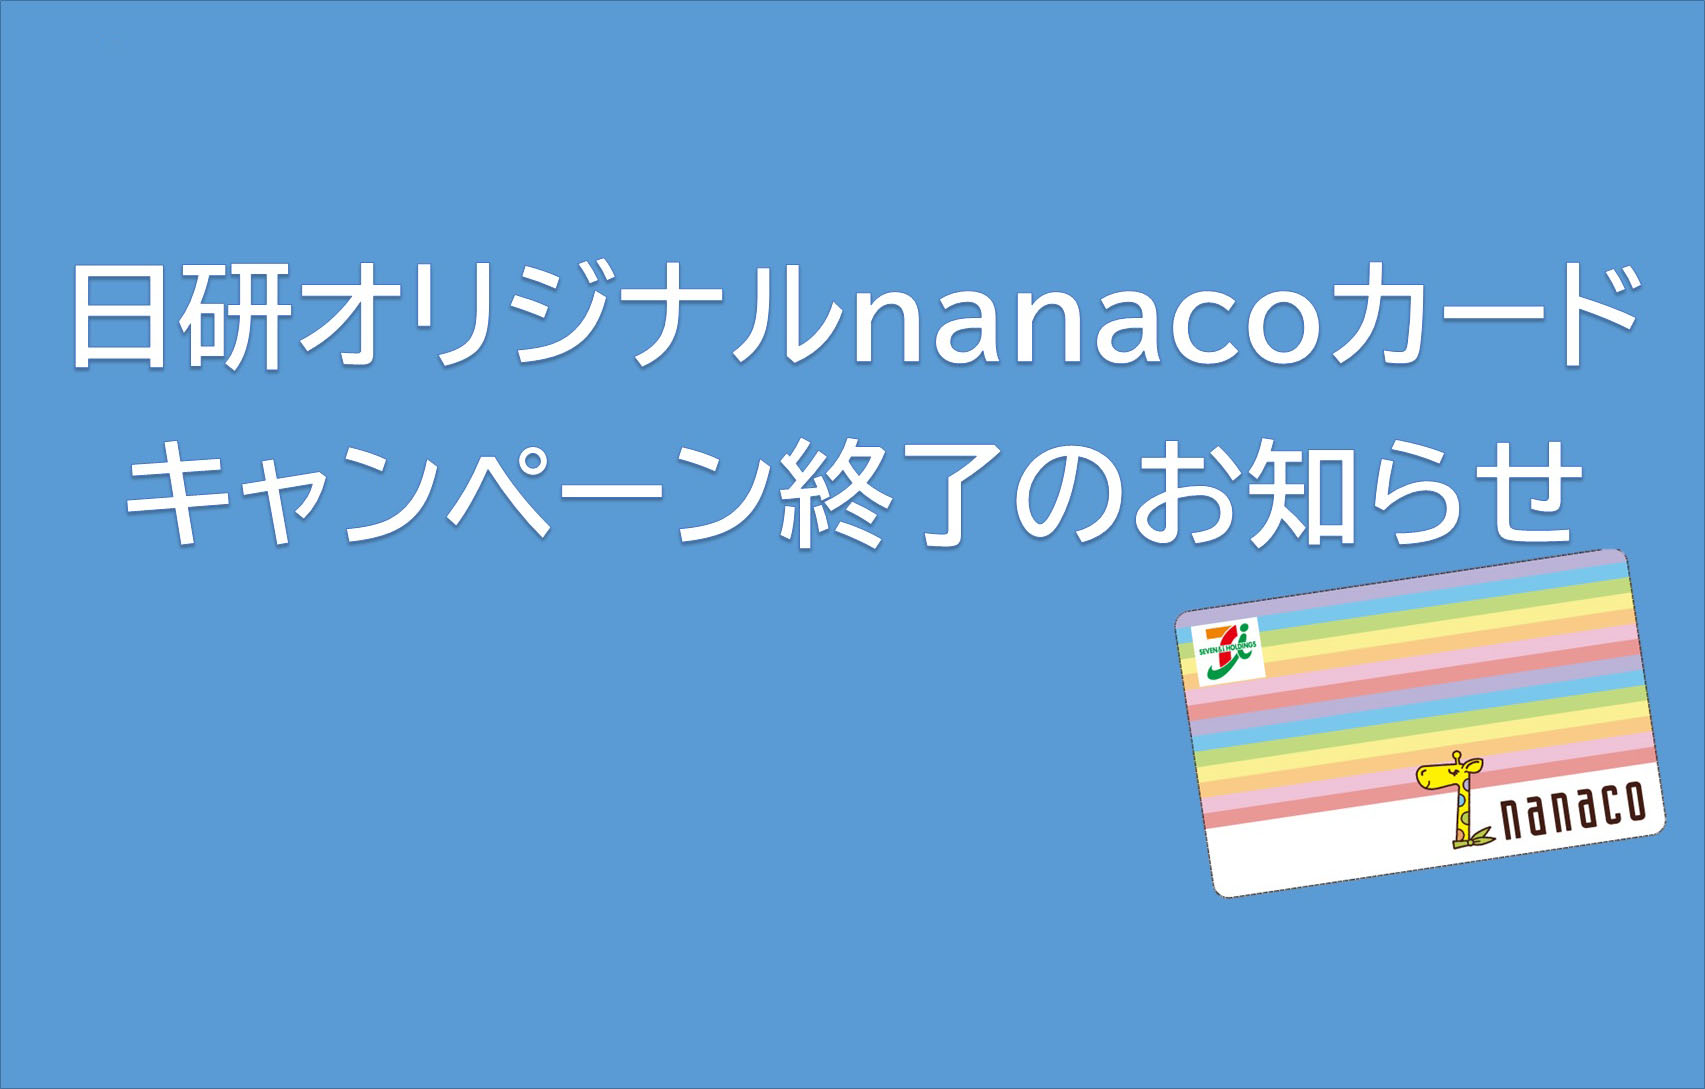 日研オリジナルnanacoカードキャンペーン終了のお知らせ